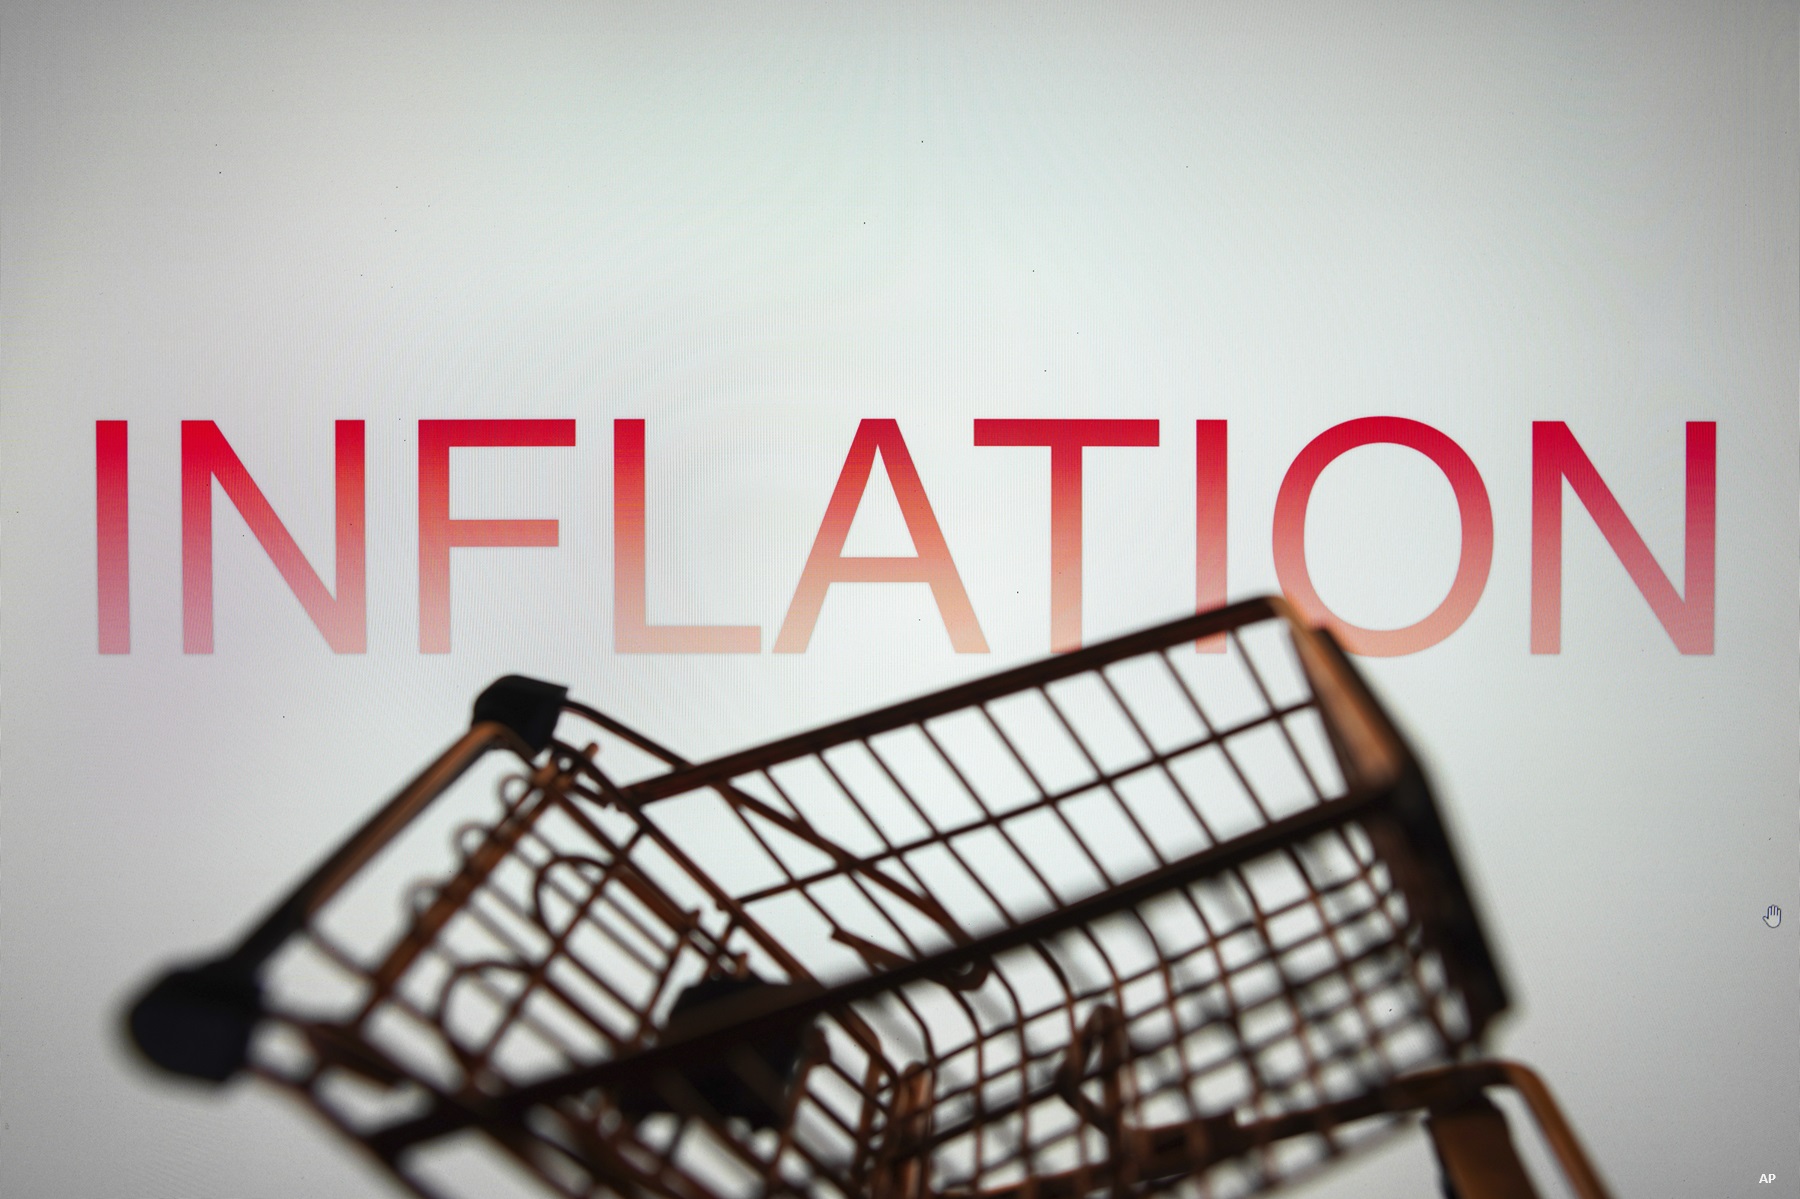 Le mot Inflation est affiché sur un smartphone avec un panier d'achat